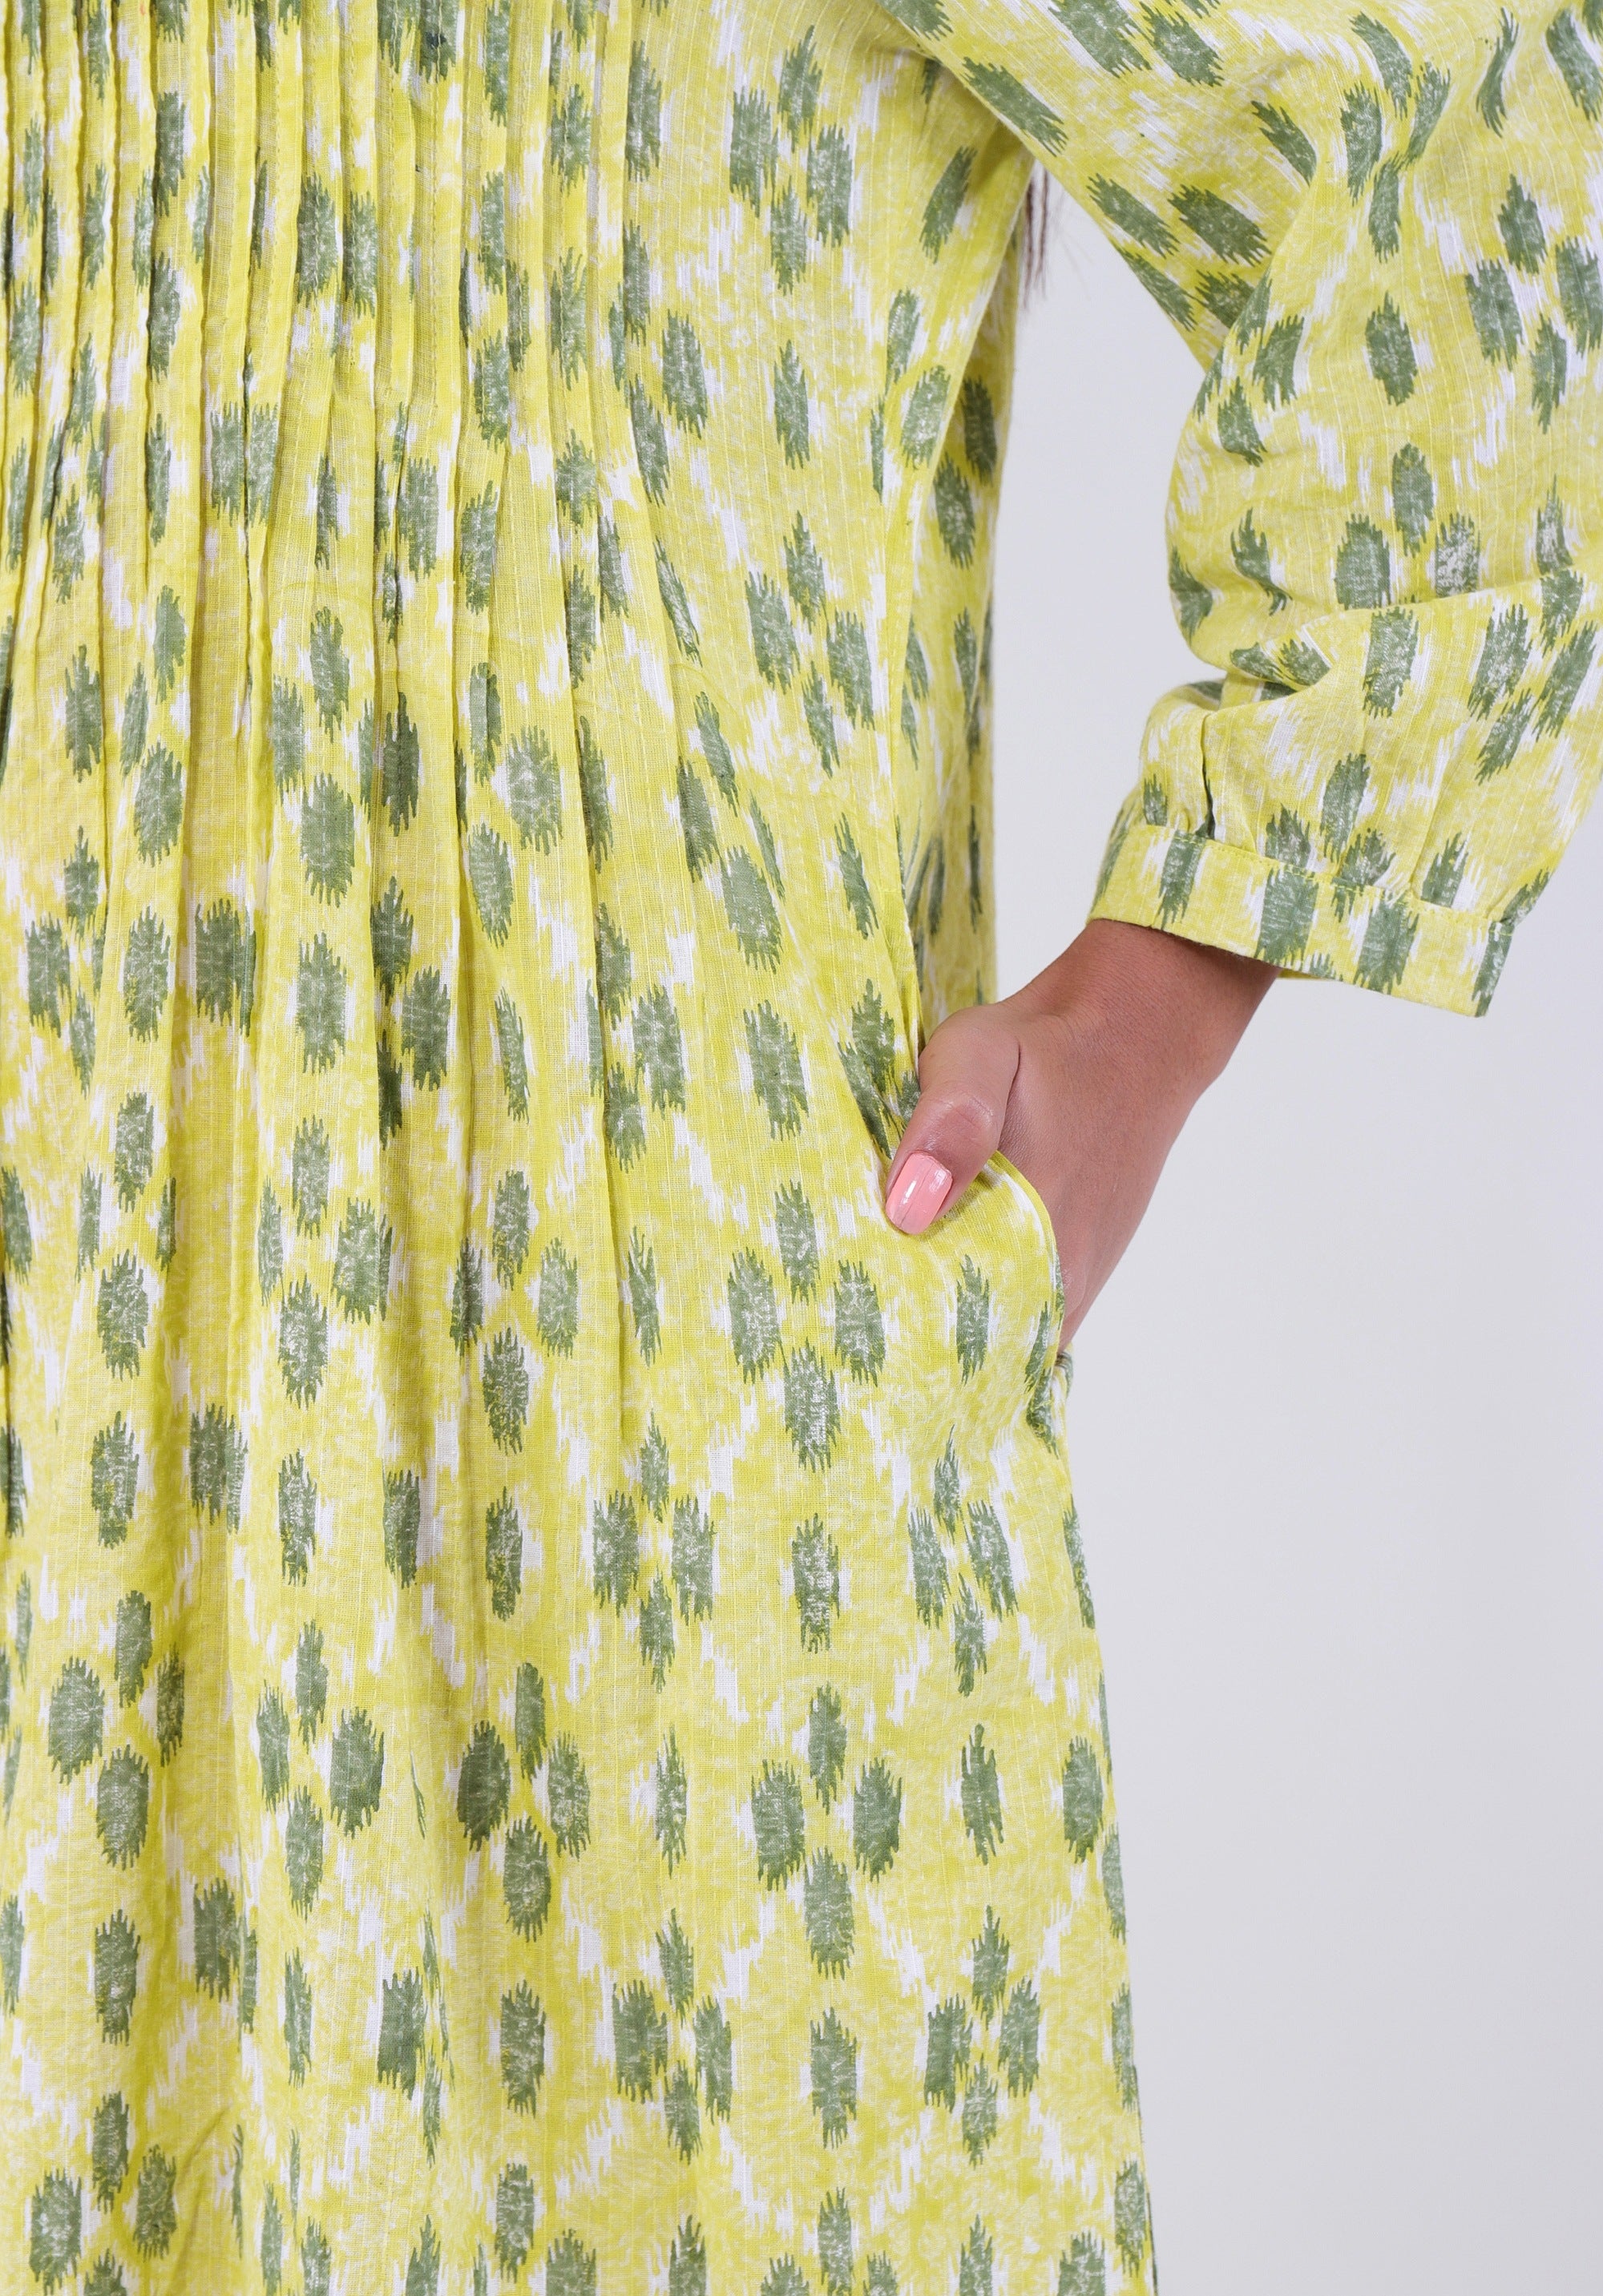 Women Printed dress Kris pin tuck ikkat kantha Yellow